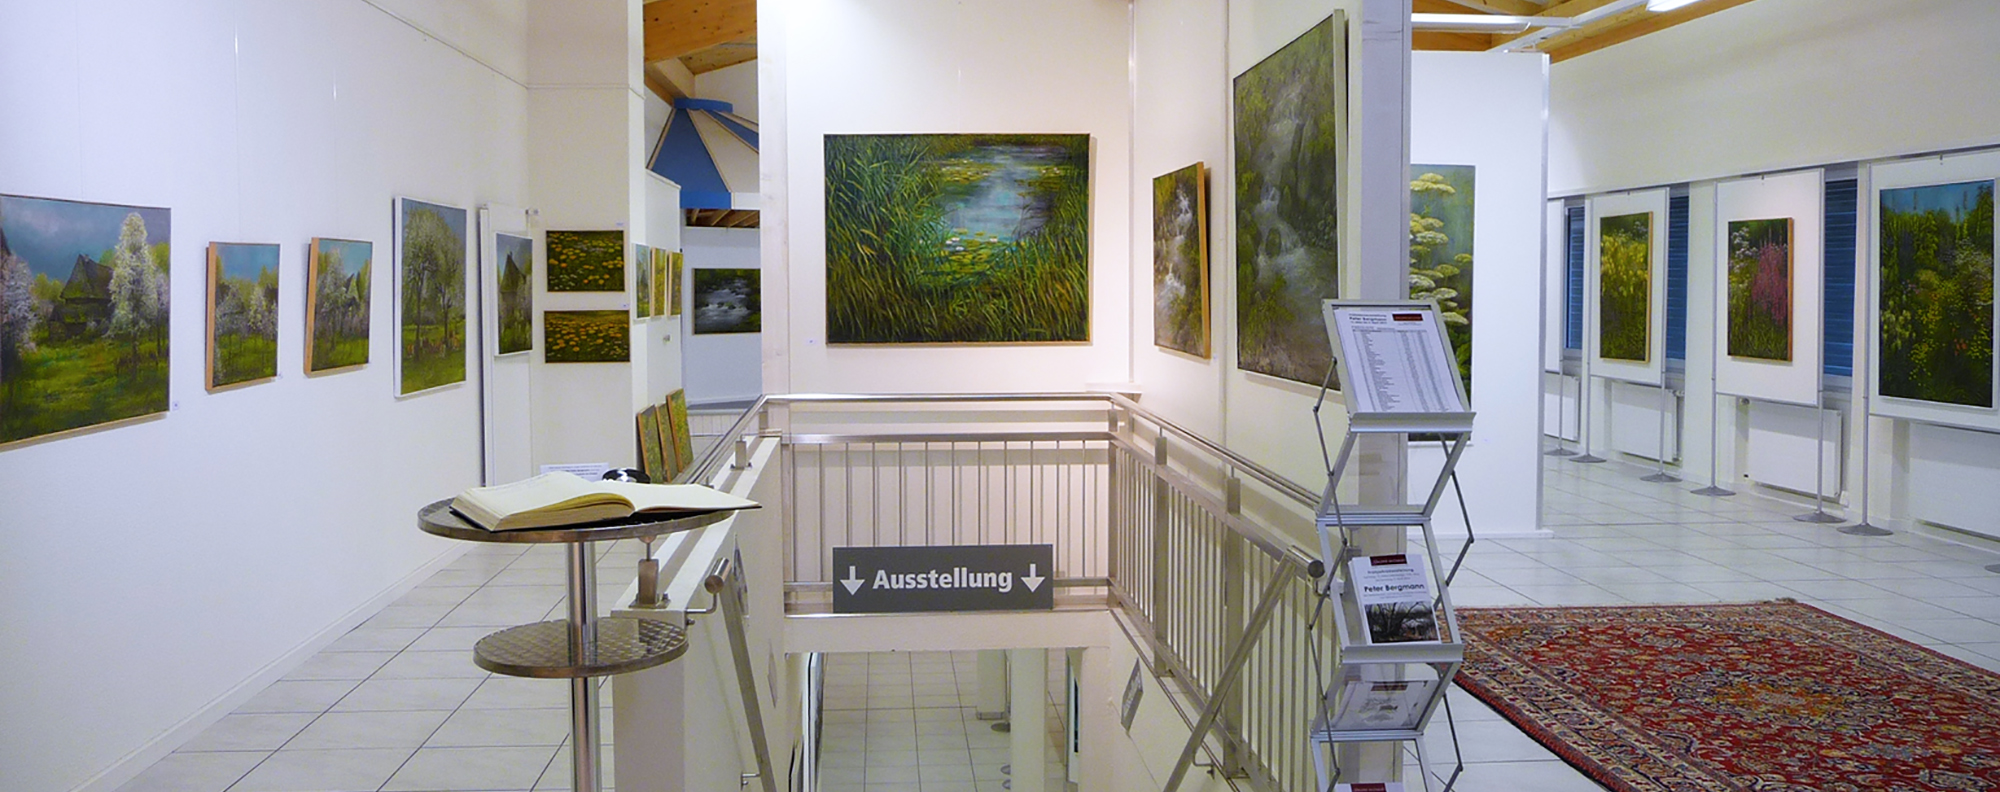 Galerie im Chalet, Kirchberg-Alchenflüh (BE)